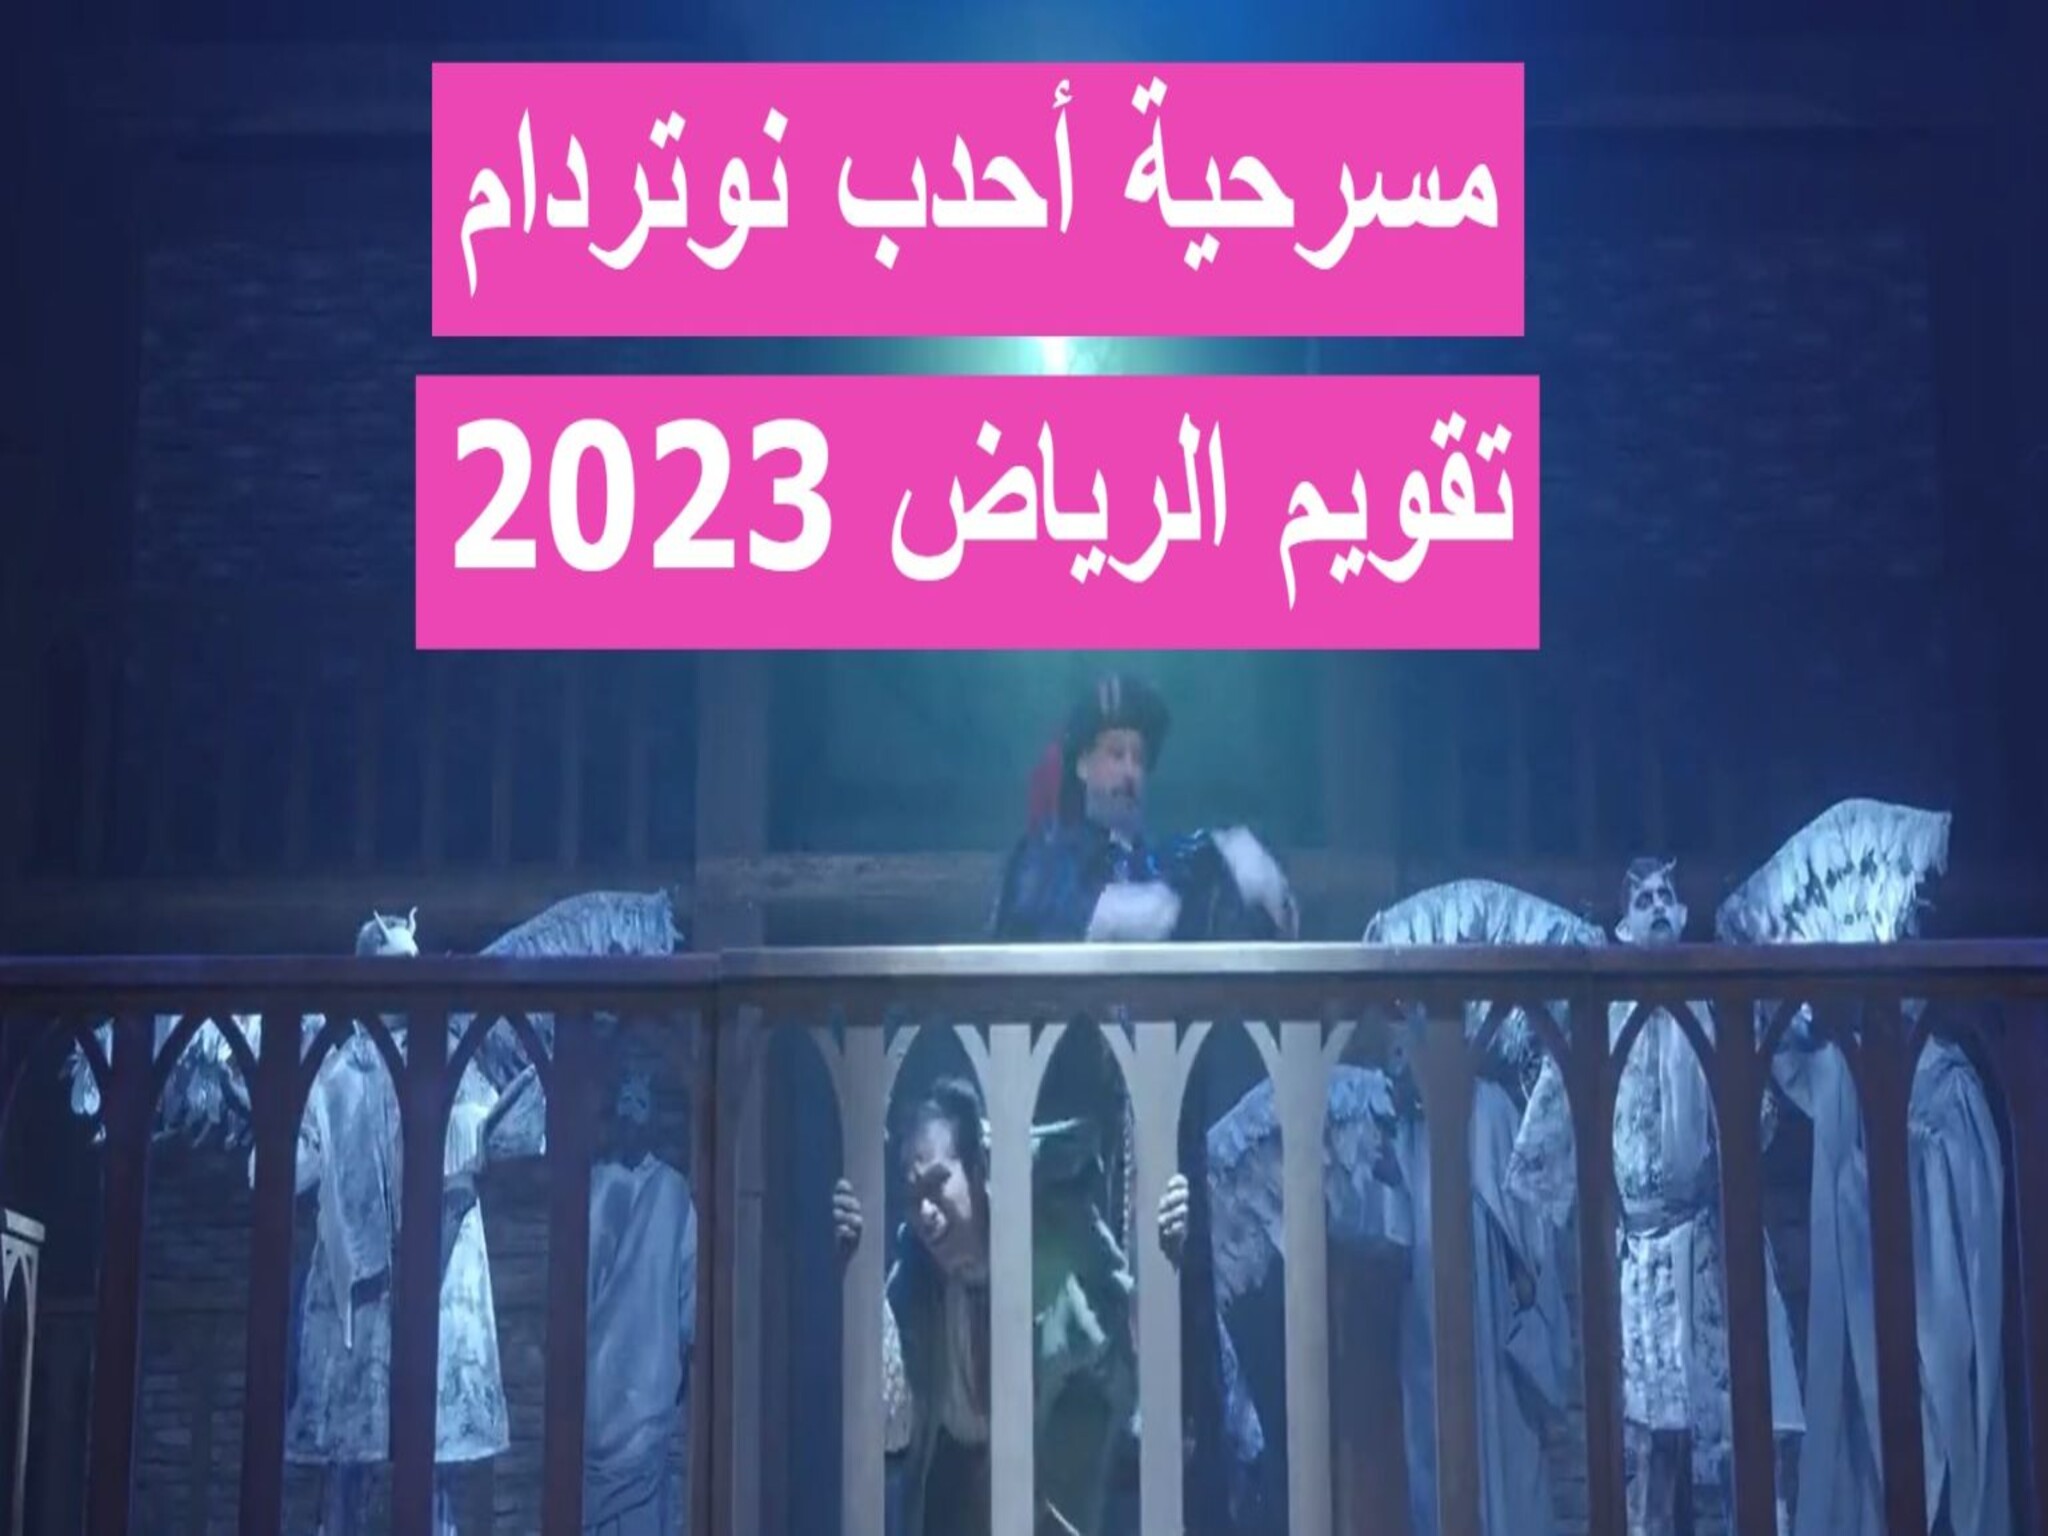 مسرحية «أحدب نوتردام» موعد وخطوات حجز التذاكر في الرياض 2023